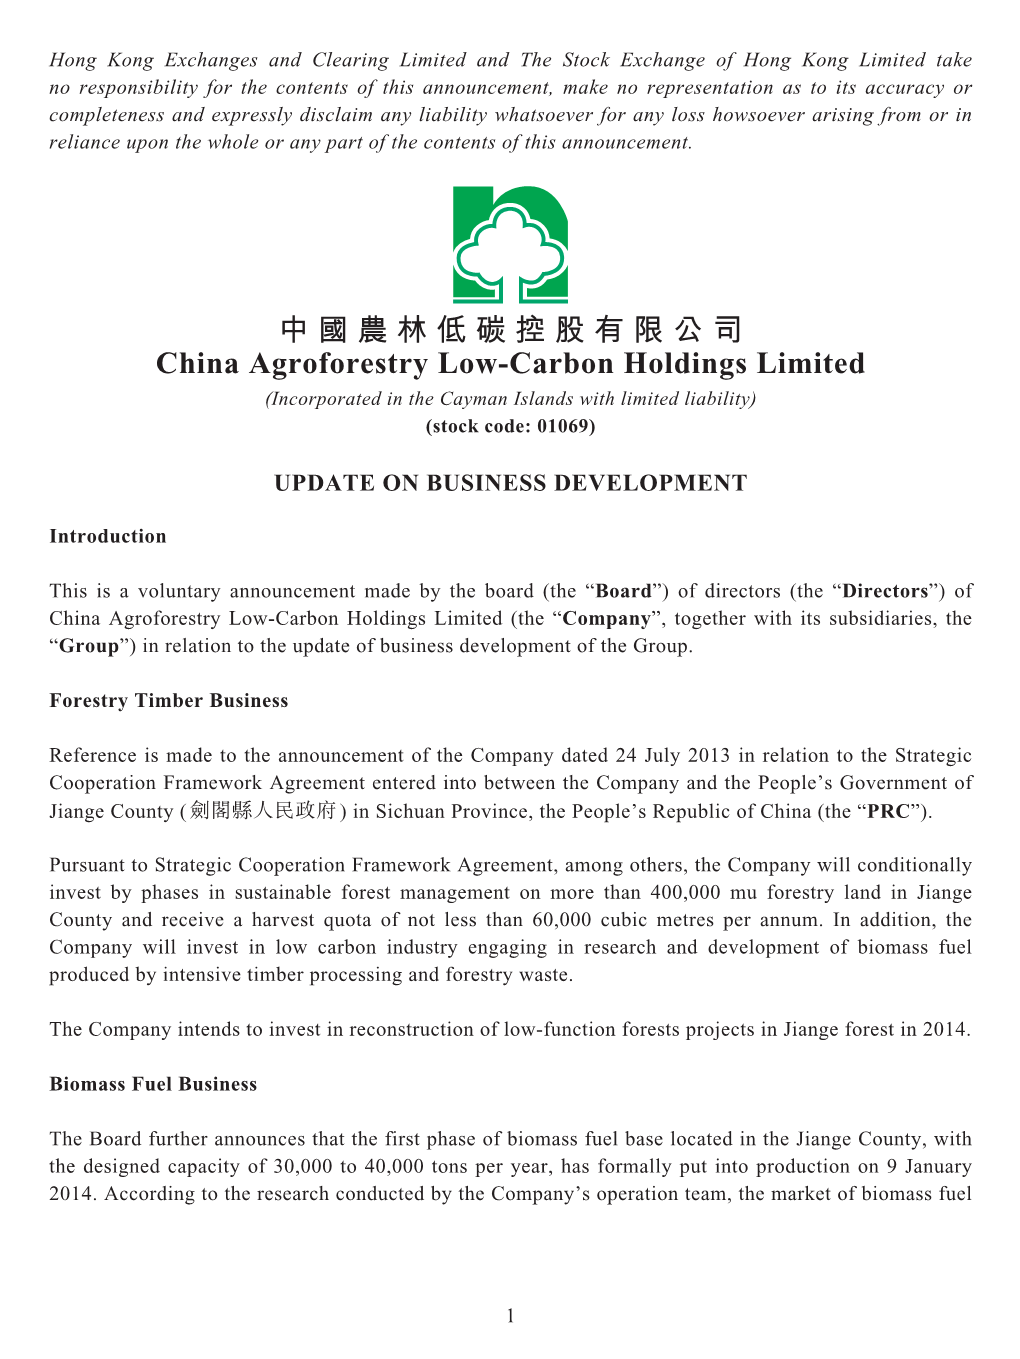 中國農林低碳控股有限公司 China Agroforestry Low-Carbon Holdings Limited (Incorporated in the Cayman Islands with Limited Liability) (Stock Code: 01069)